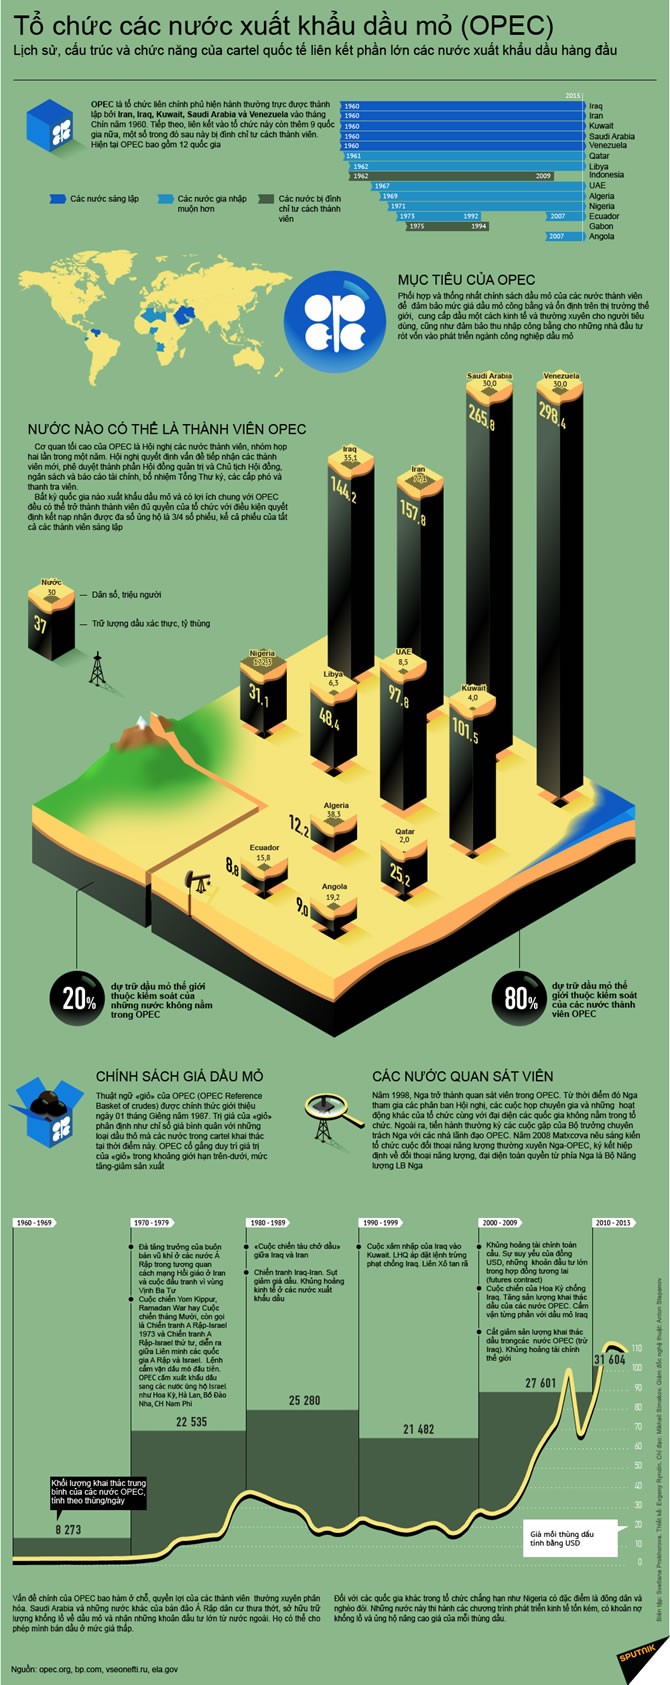 Toàn cảnh về cấu trúc sức mạnh của OPEC ảnh 1